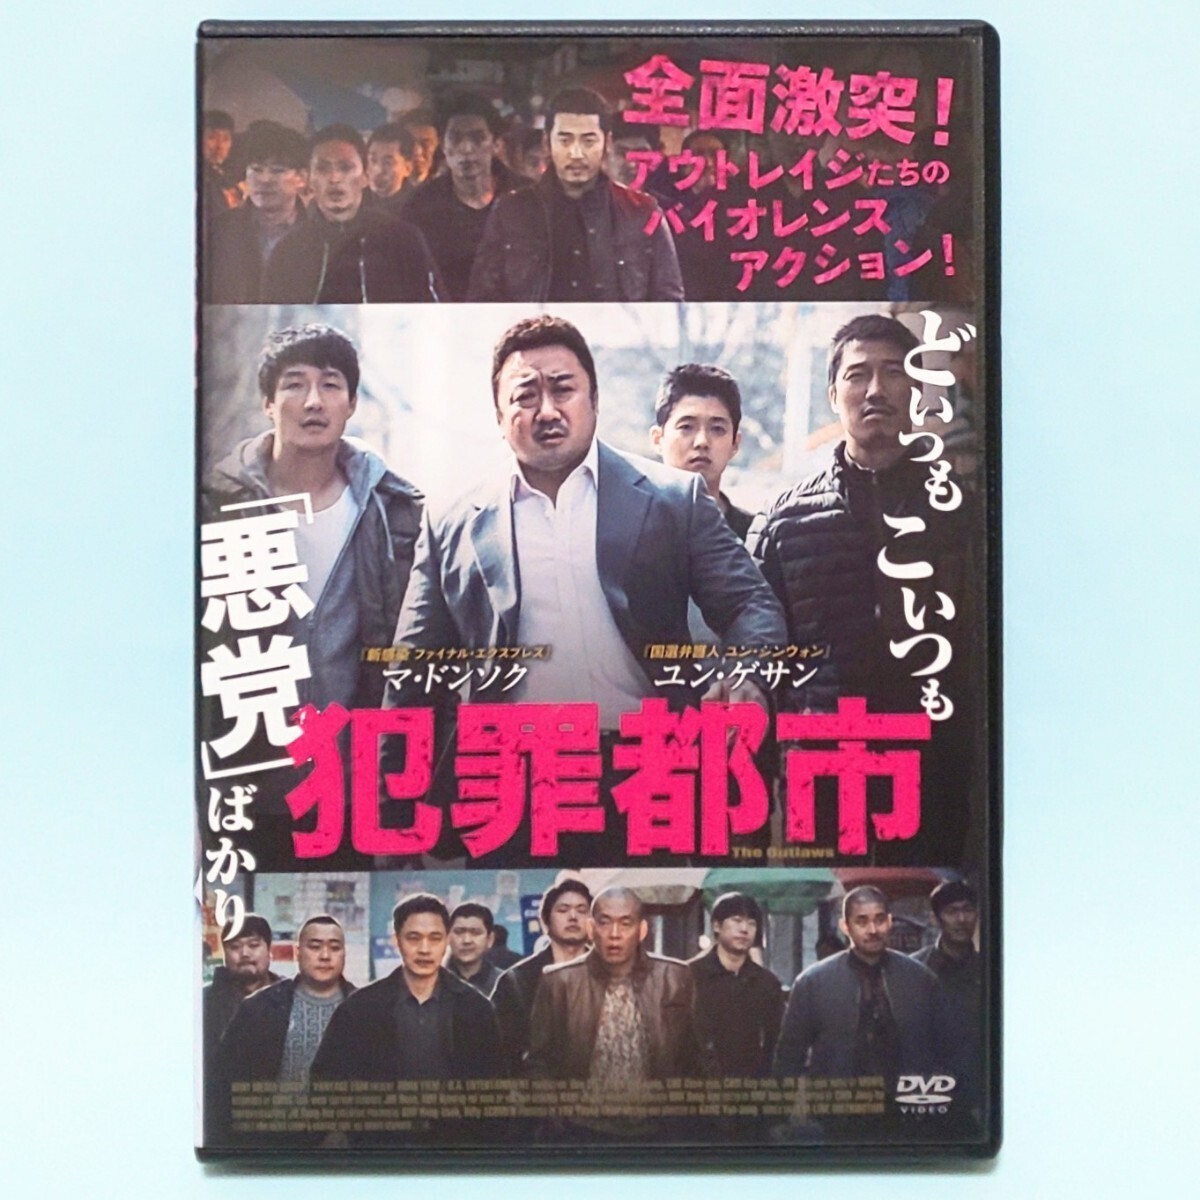  crime city rental version DVD can *yunsoma* Don sok yun*ge sun cho*jeyun che *g.fa chin *songyu